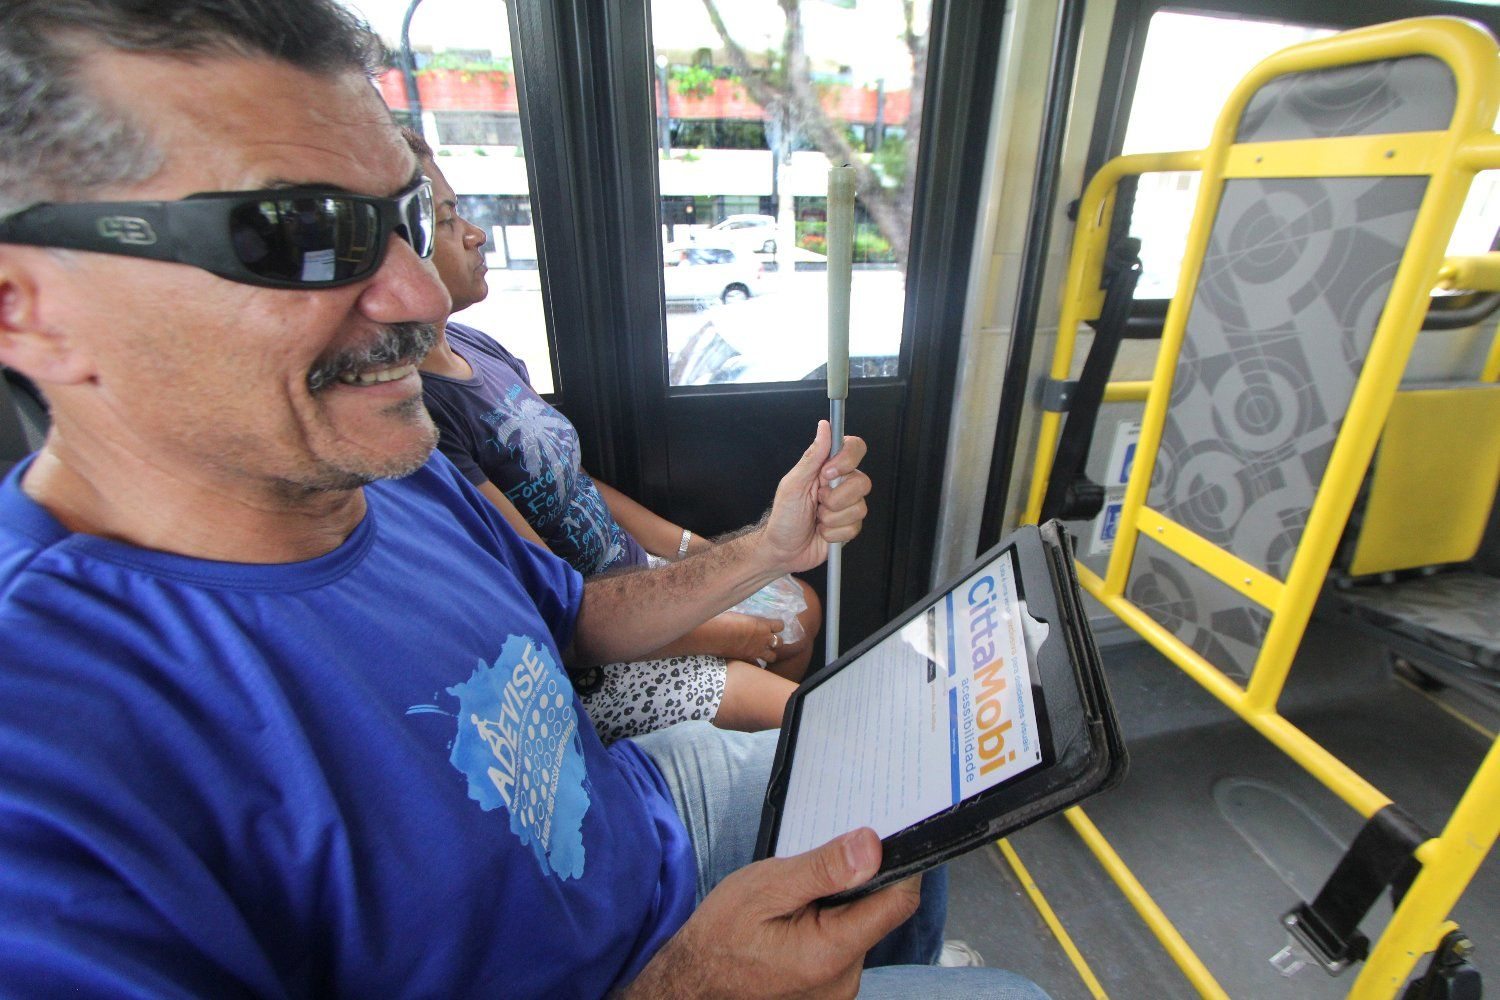 Plataforma de transporte coletivo facilita acesso de deficientes visuais